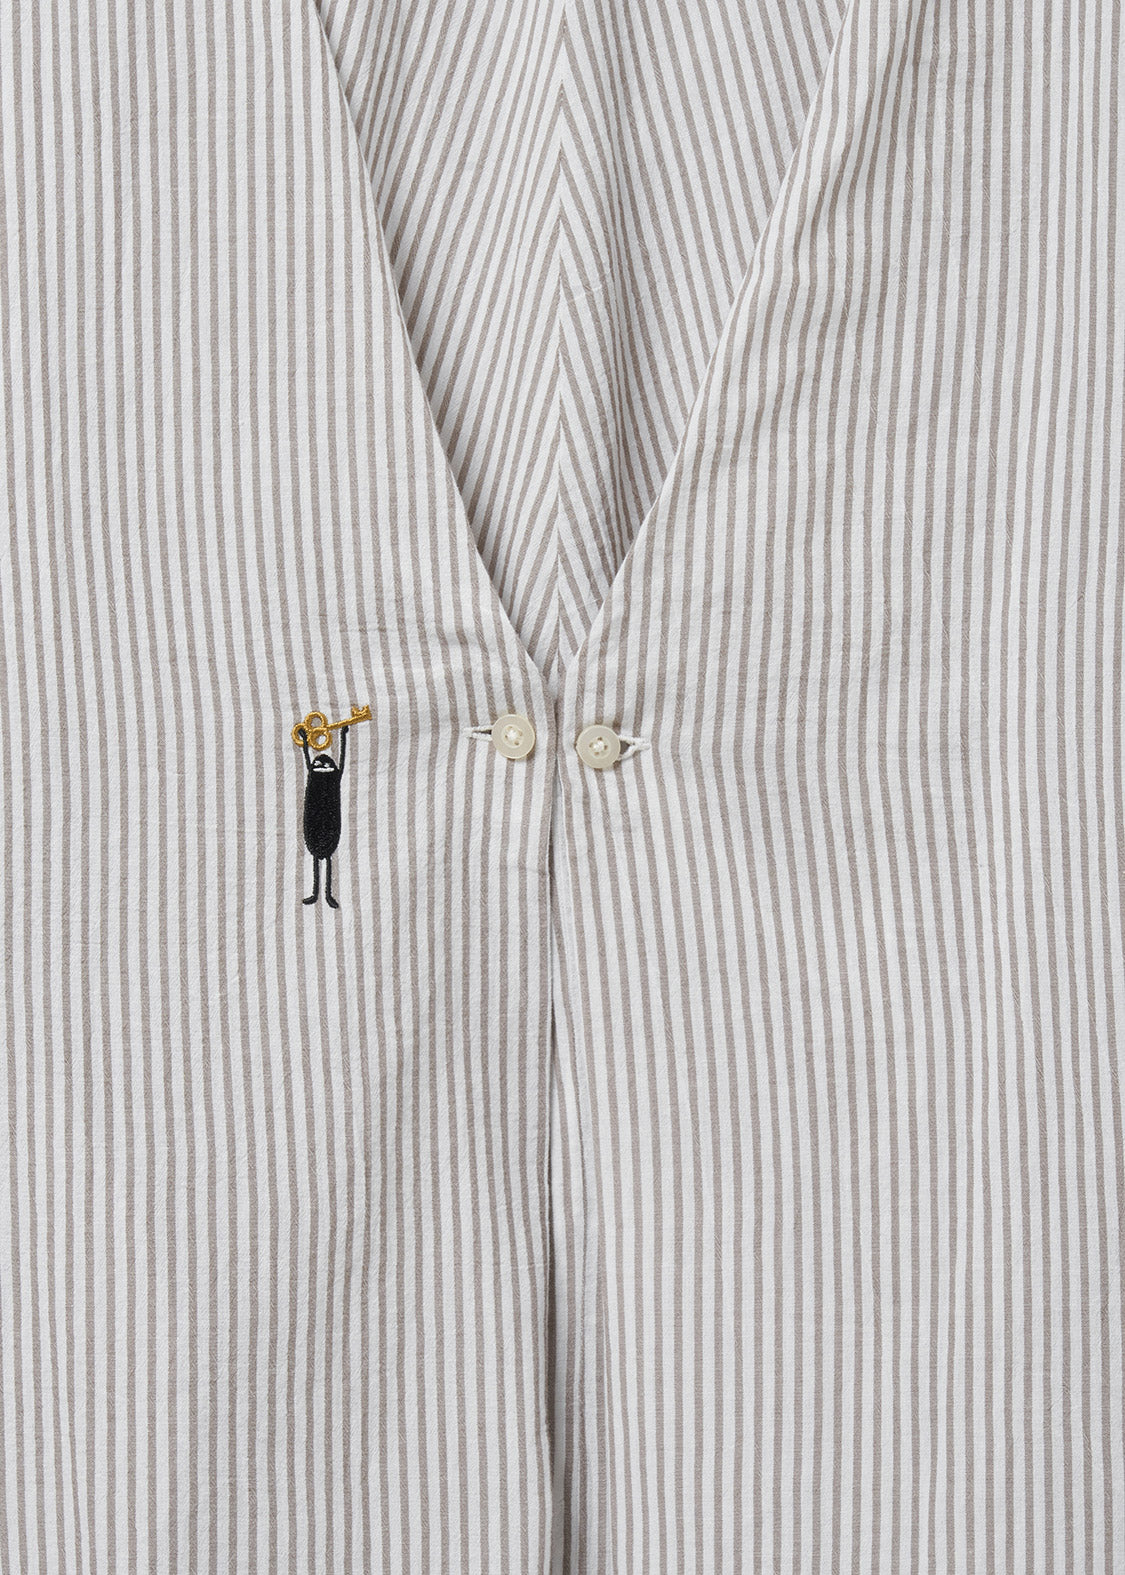 Embroidery Long Sleeve Shirt (Keyhole Beautiful Shadow)